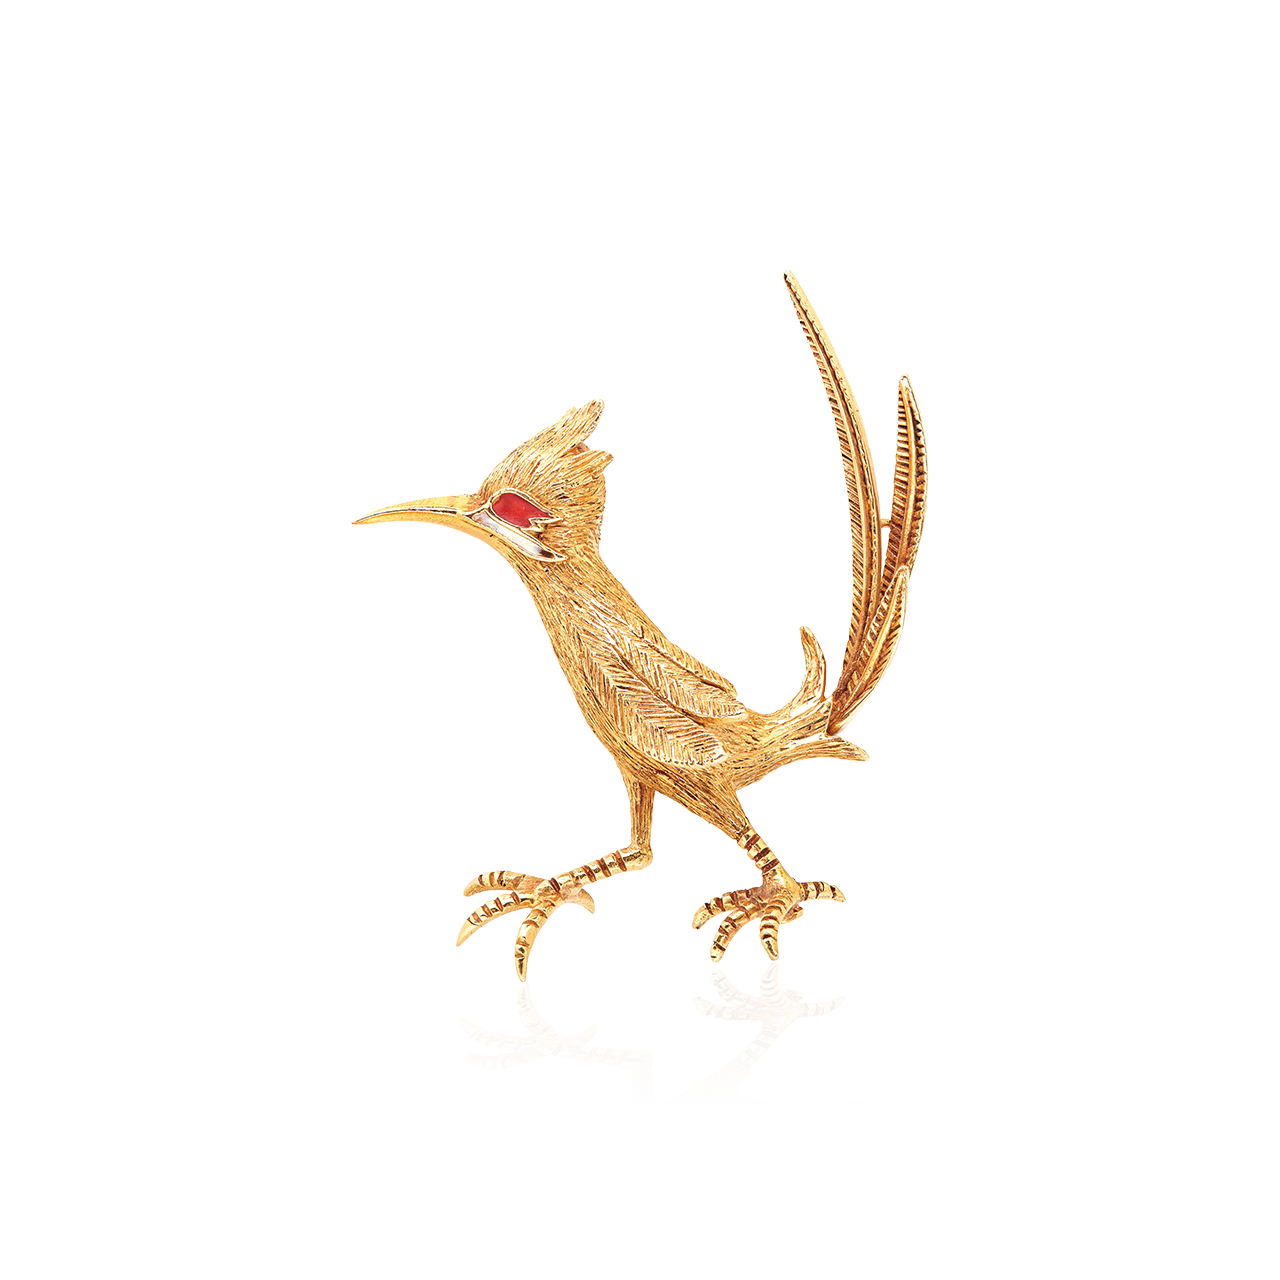 法國古董黃金紅寶嗶嗶鳥造型胸針, CIRCA 1960
Gold And Ruby Vintage 'Road
Runner Bird' Brooch, French,
Circa 1960